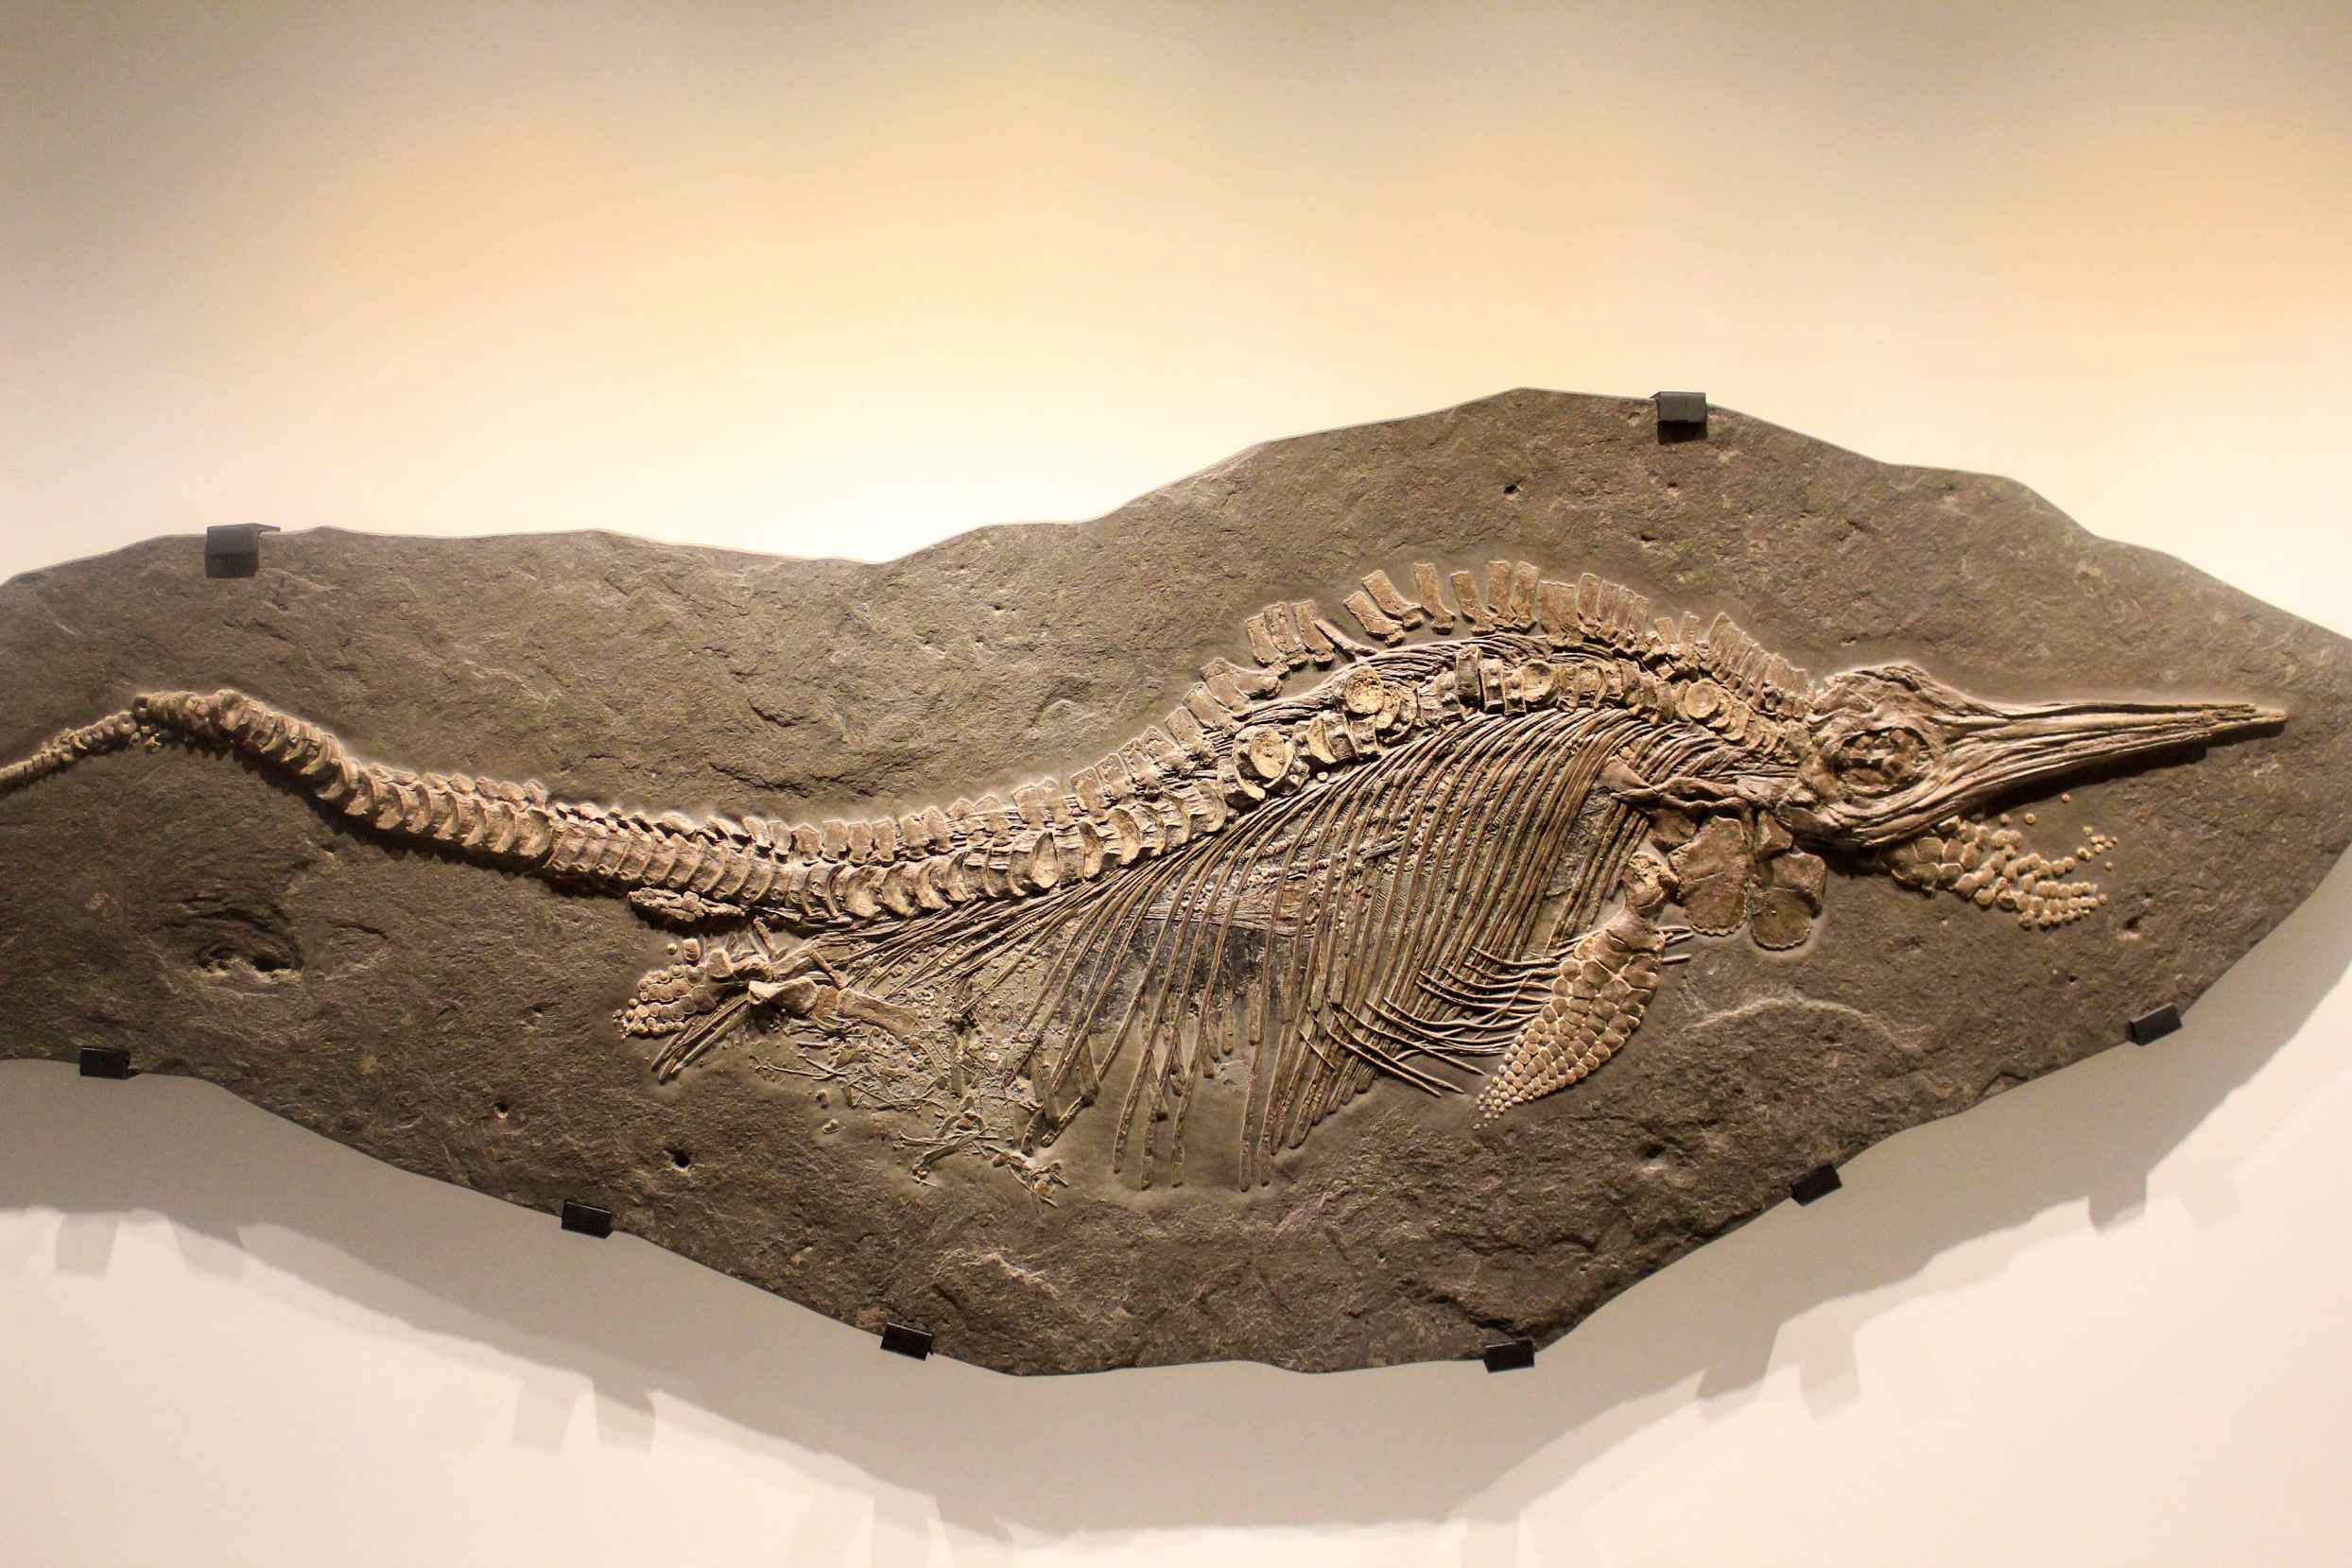 Mafupa ndi zotsalira za nyama zakale Ichthyosaur kapena shark lizard fossil